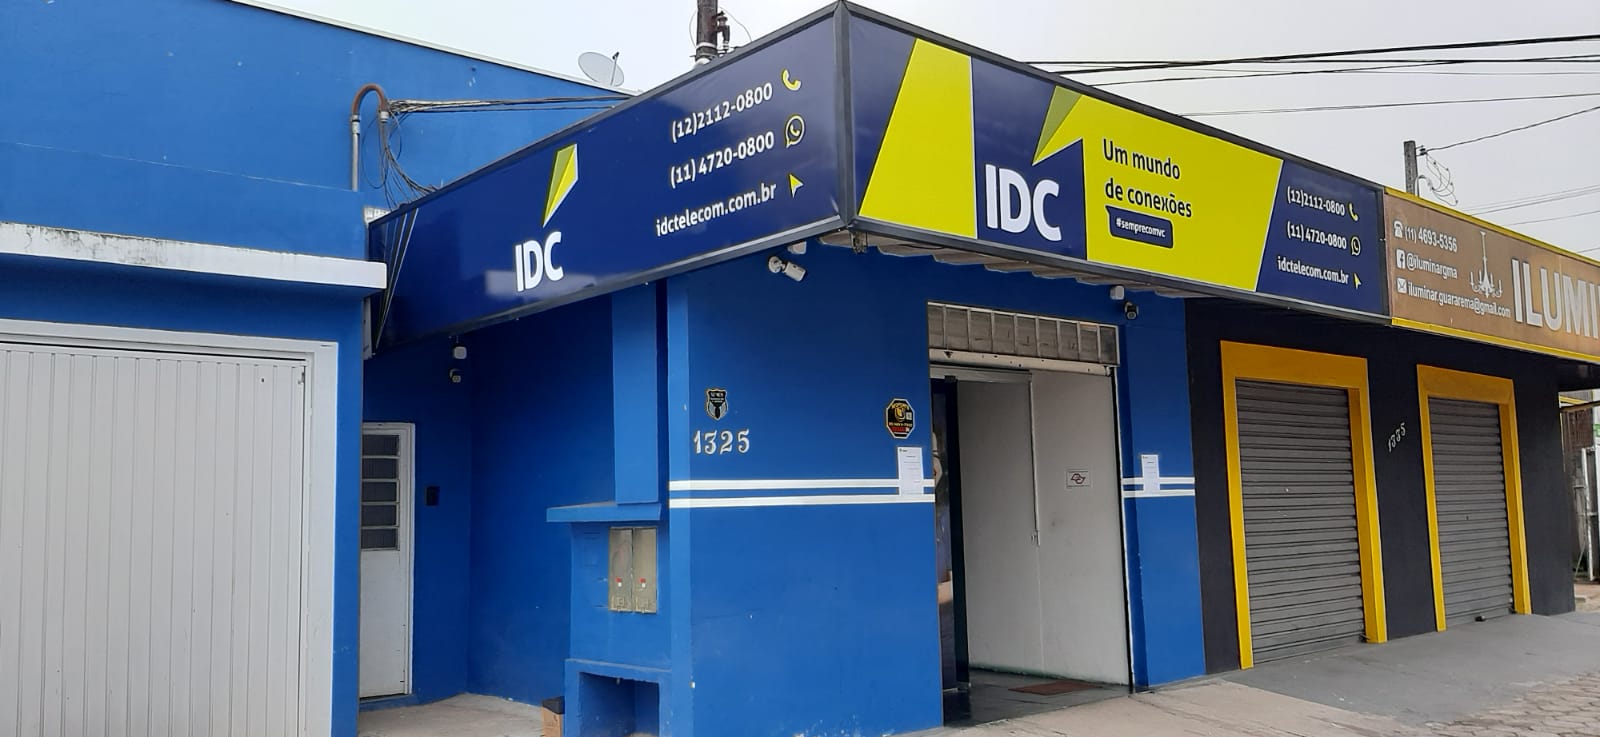  IDC Telecom é comprada esta semana pela Desktop